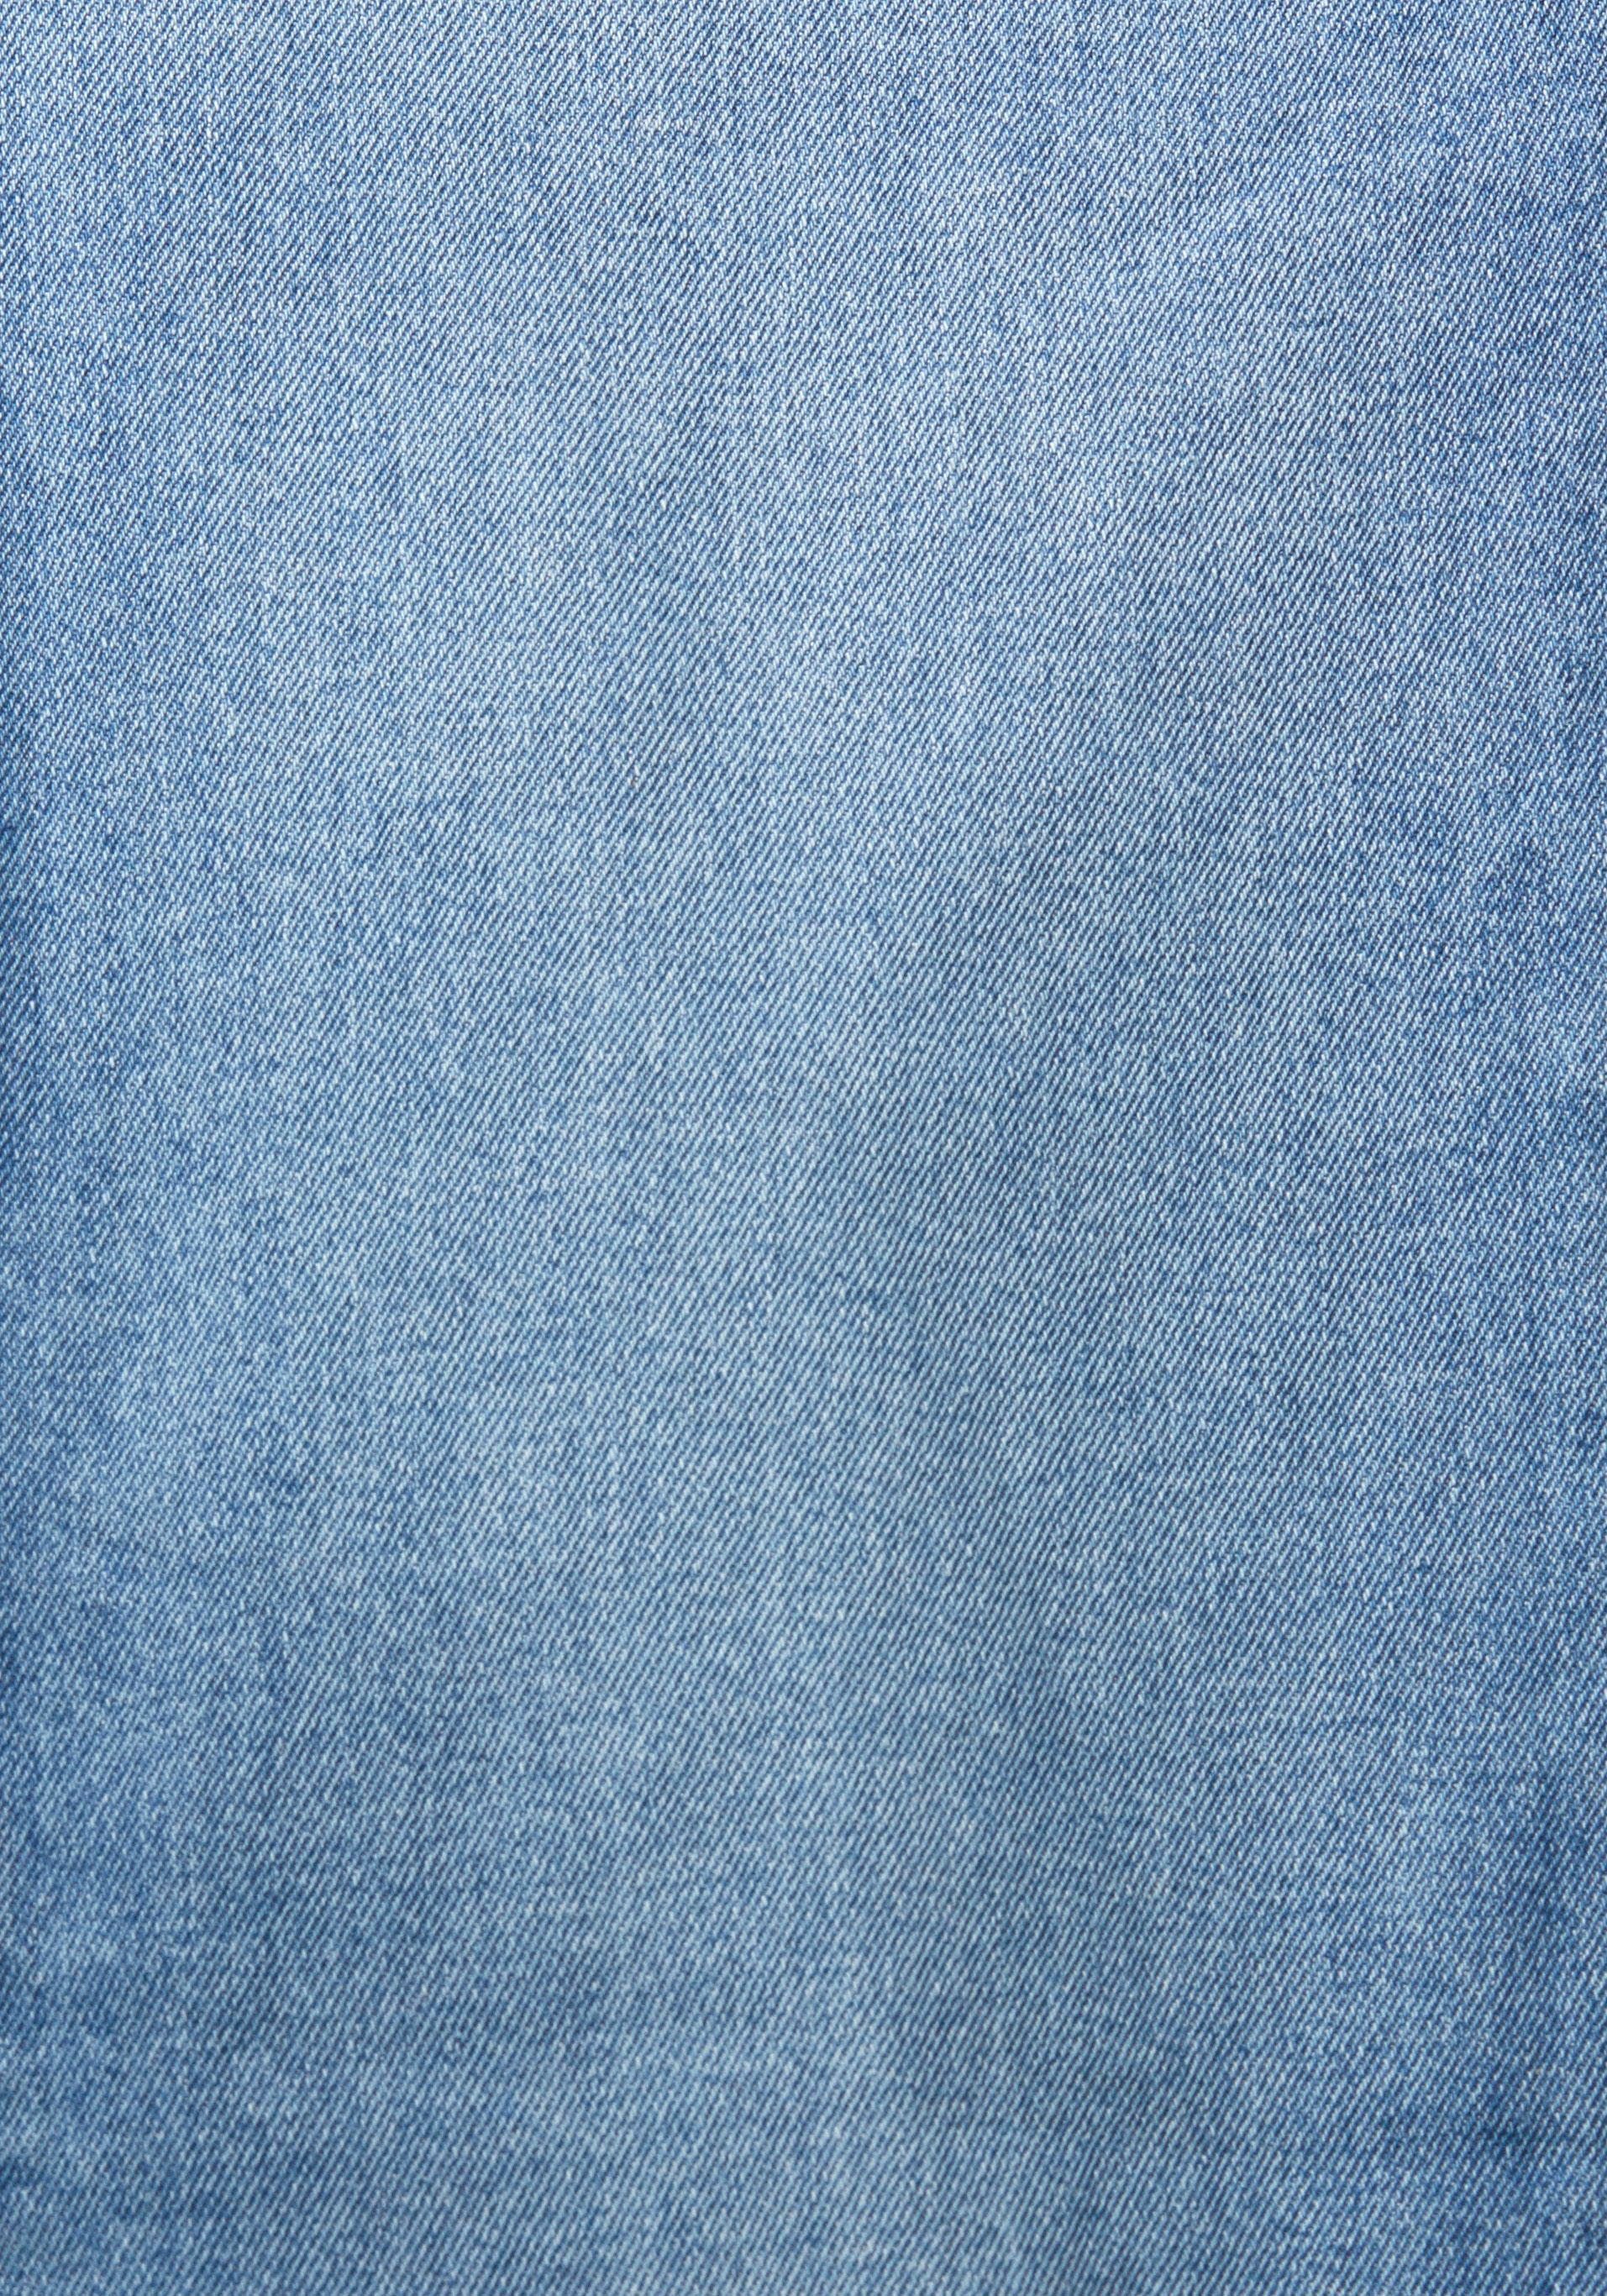 Esprit mit Destroyed-Effekten Slim-fit-Jeans light blue washed